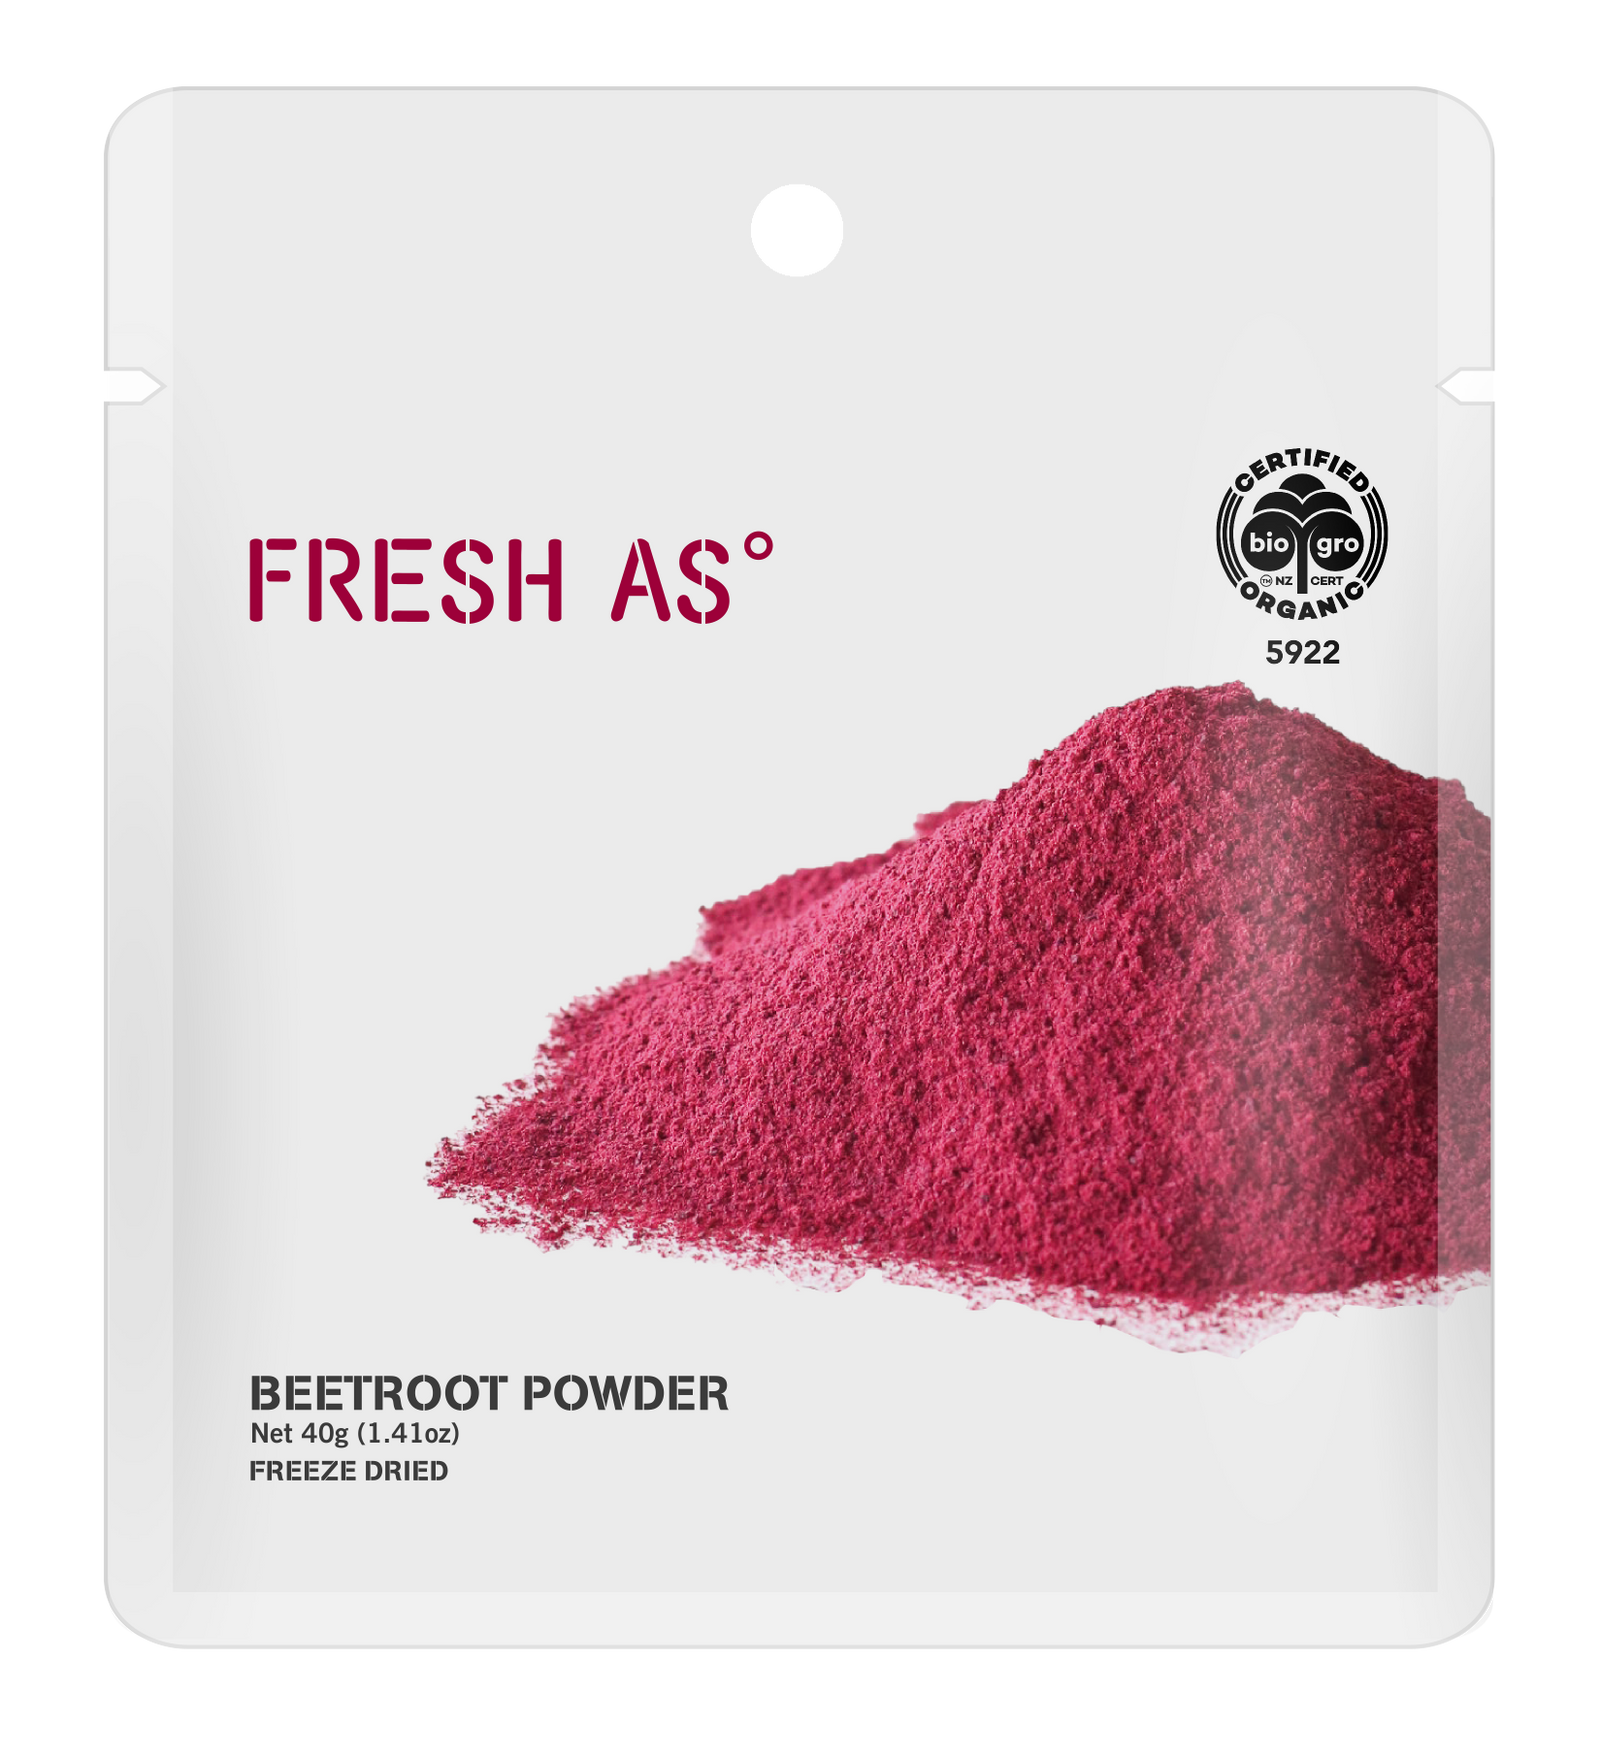 Beetroot powder 40g